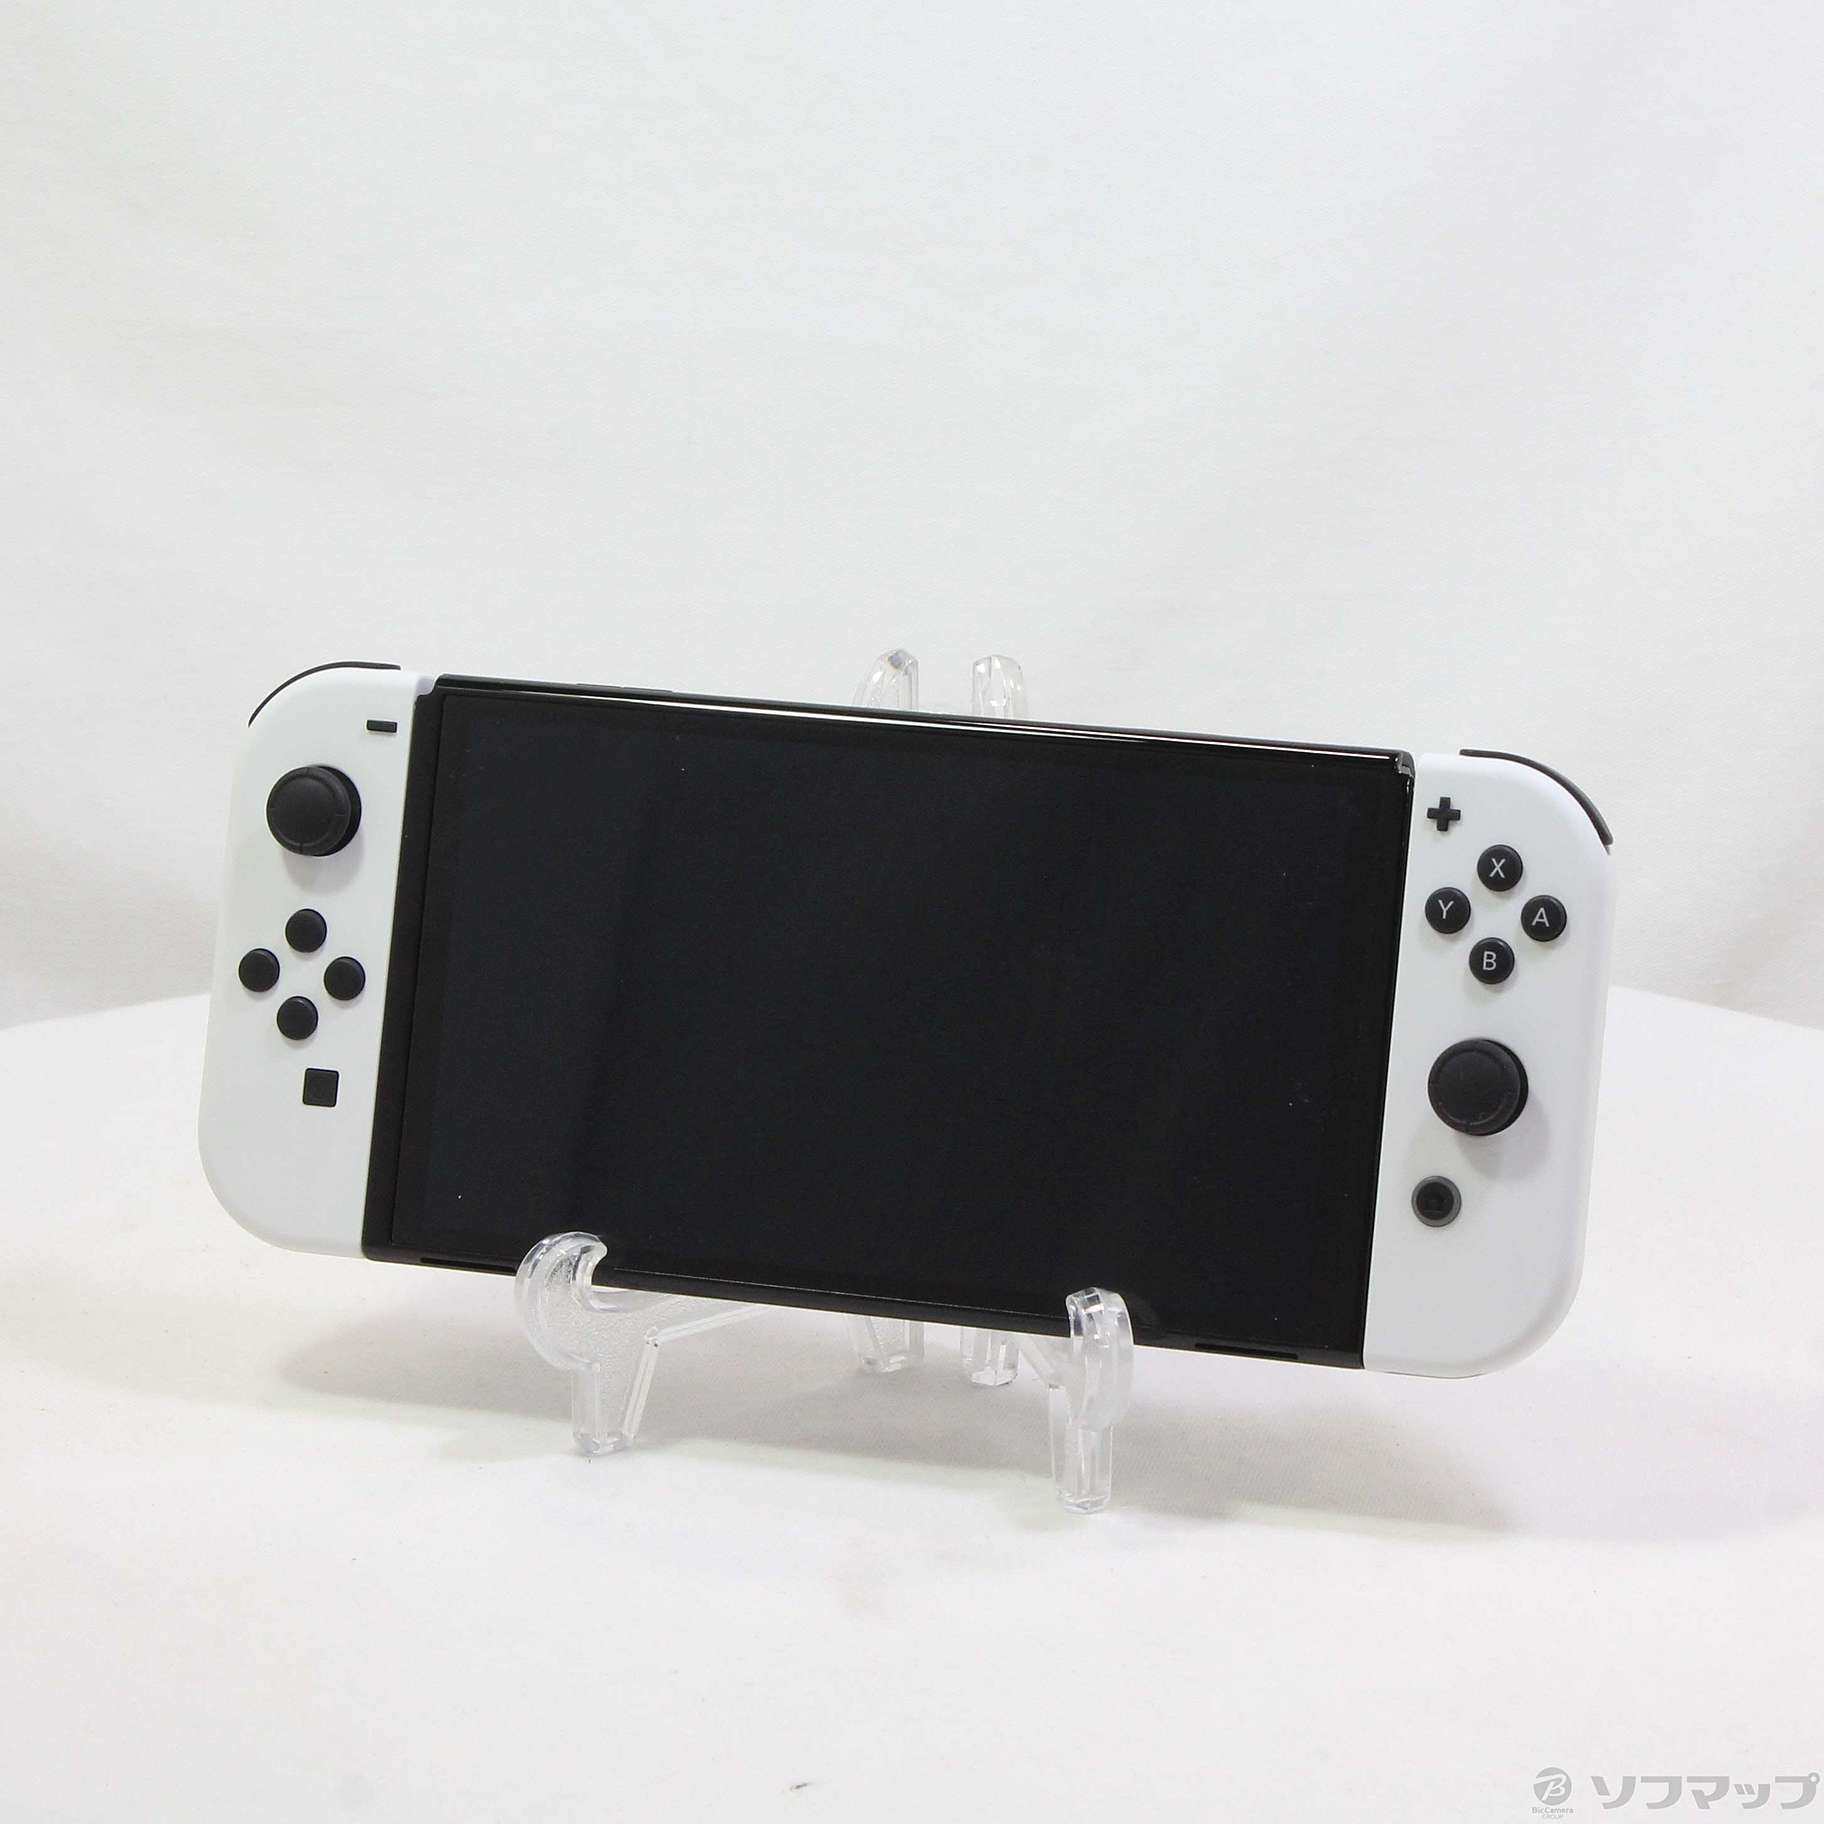 【新品未開封】Nintendo Switch 有機EL Joycon ホワイト